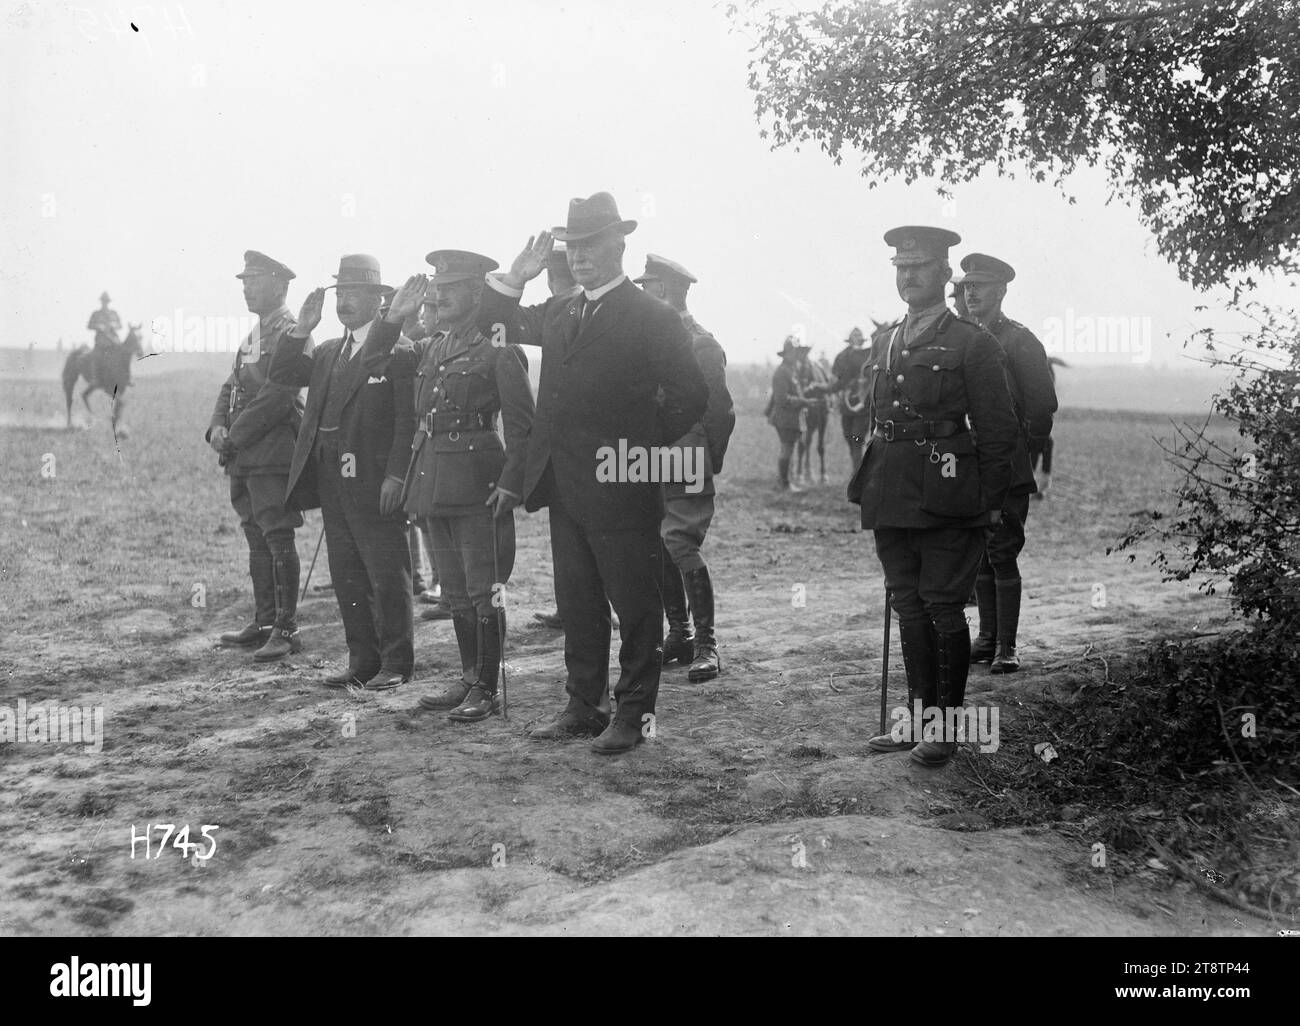 William Massey, der während des Ersten Weltkriegs in Frankreich den Gruß nahm, Foto von William Massey (vierter von links), der den Gruß mit Joseph Gordon Coates (zweiter von links) und anderen Militärangehörigen während des Ersten Weltkriegs nahm, aufgenommen in Frankreich am 1. Juli 1918 Stockfoto